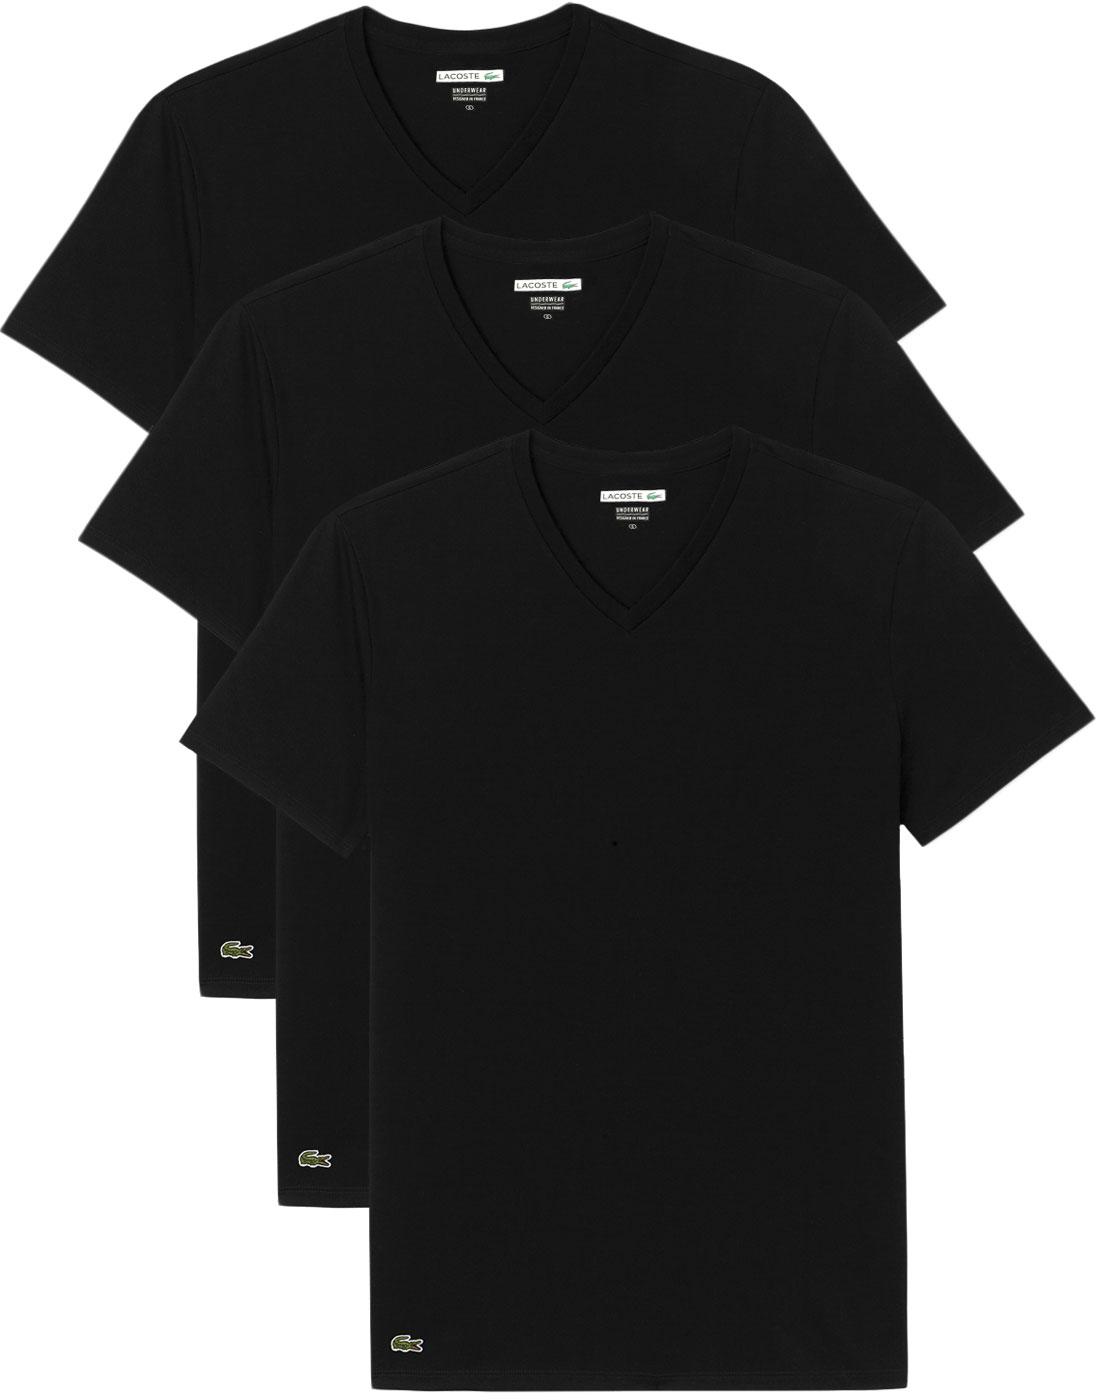 LACOSTE Men's Retro 3 Pack Boxed V-Neck T-Shirt in Black